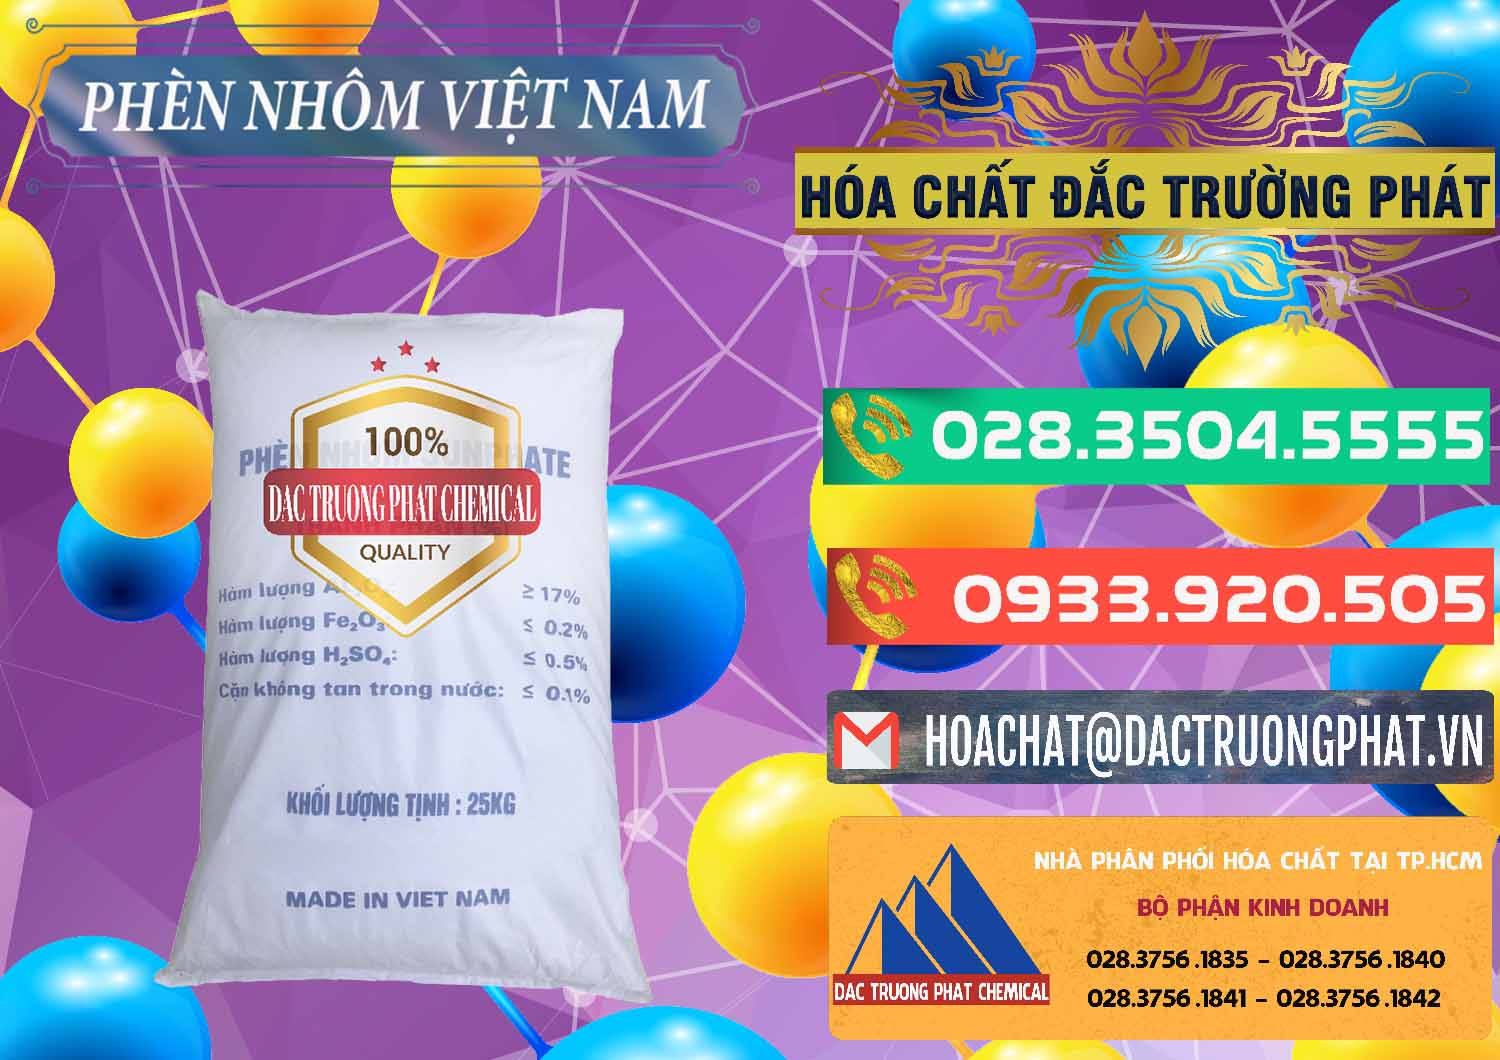 Cty chuyên phân phối ( kinh doanh ) Phèn Nhôm - Al2(SO4)3 17% Việt Nam - 0465 - Nơi chuyên kinh doanh & bán hóa chất tại TP.HCM - congtyhoachat.com.vn